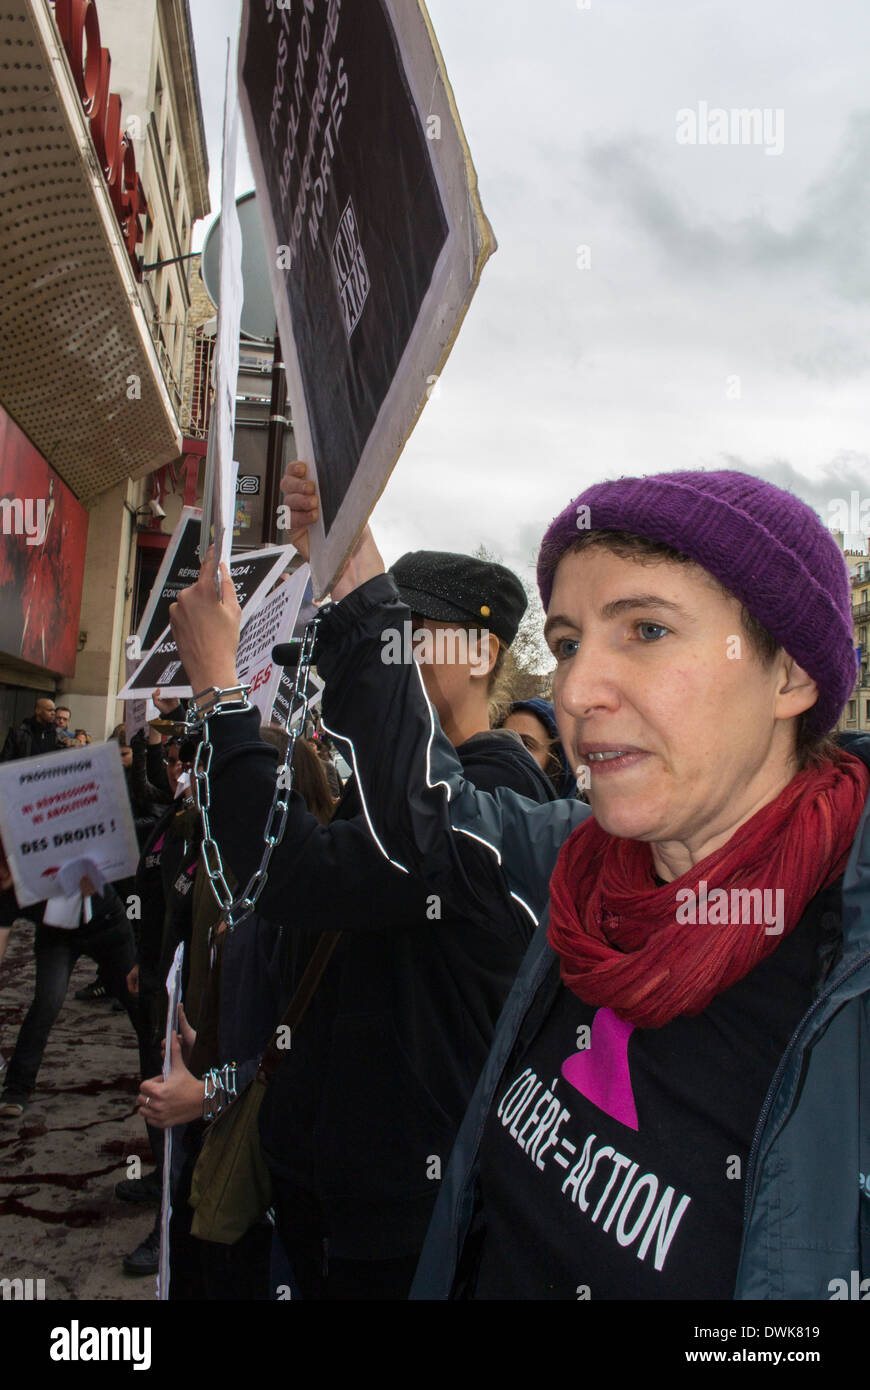 Paris, France, Groupe de militants européens, Act Up Paris, pour protester contre "ou-lin Rouge' Theatre, à l'encontre de l'intérieur Réunion Anti-Prostitution, étant détenu par les groupes féministes traditionaliste Banque D'Images